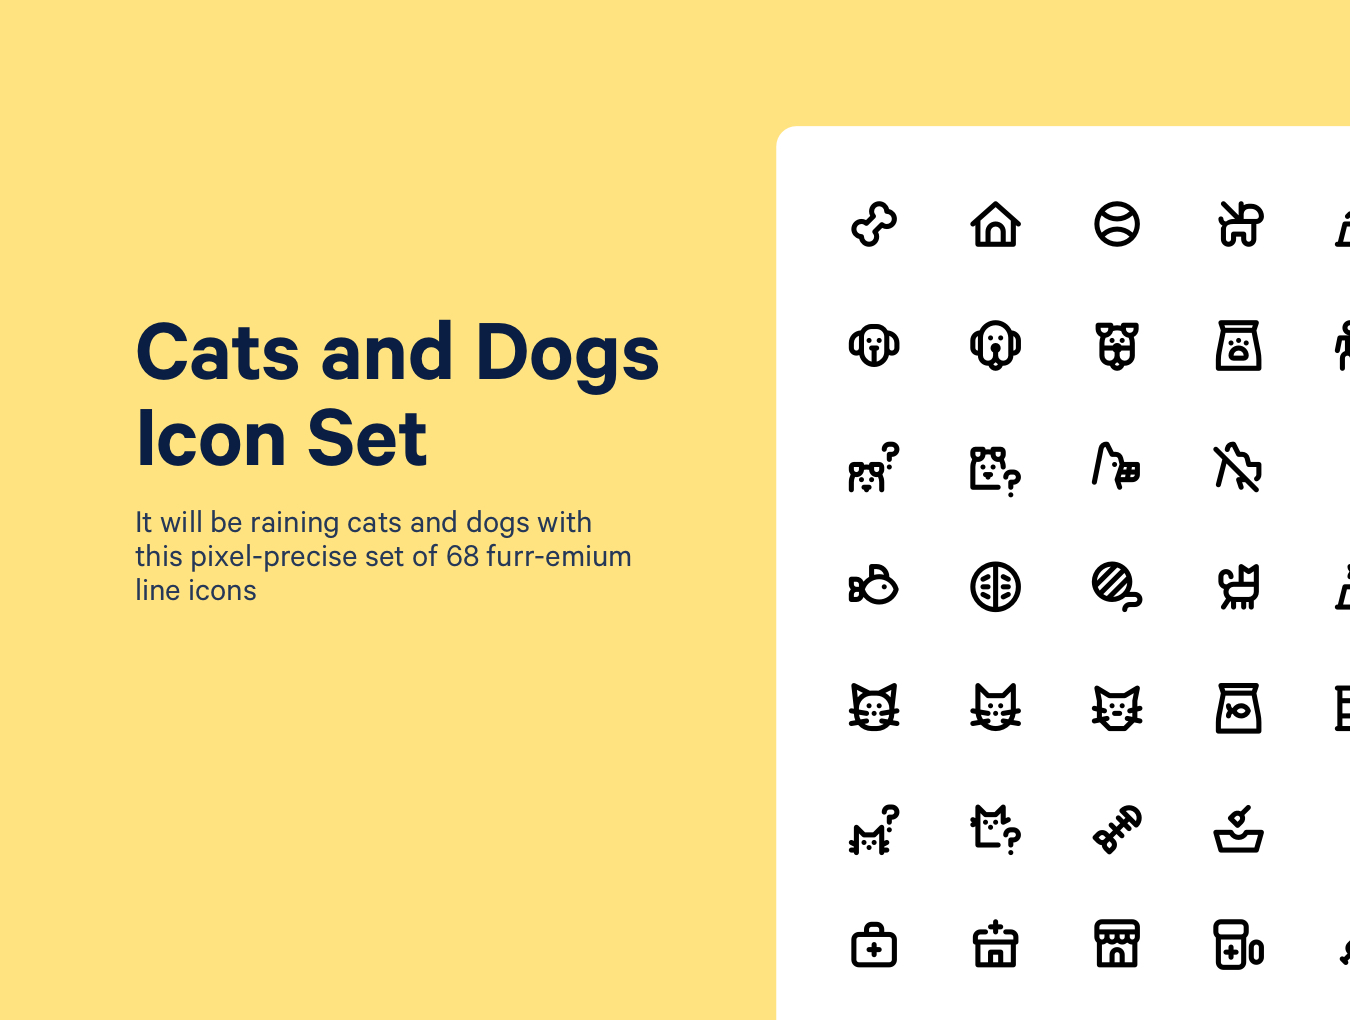 猫狗相关的元素图标套装Cats & Dogs Ico